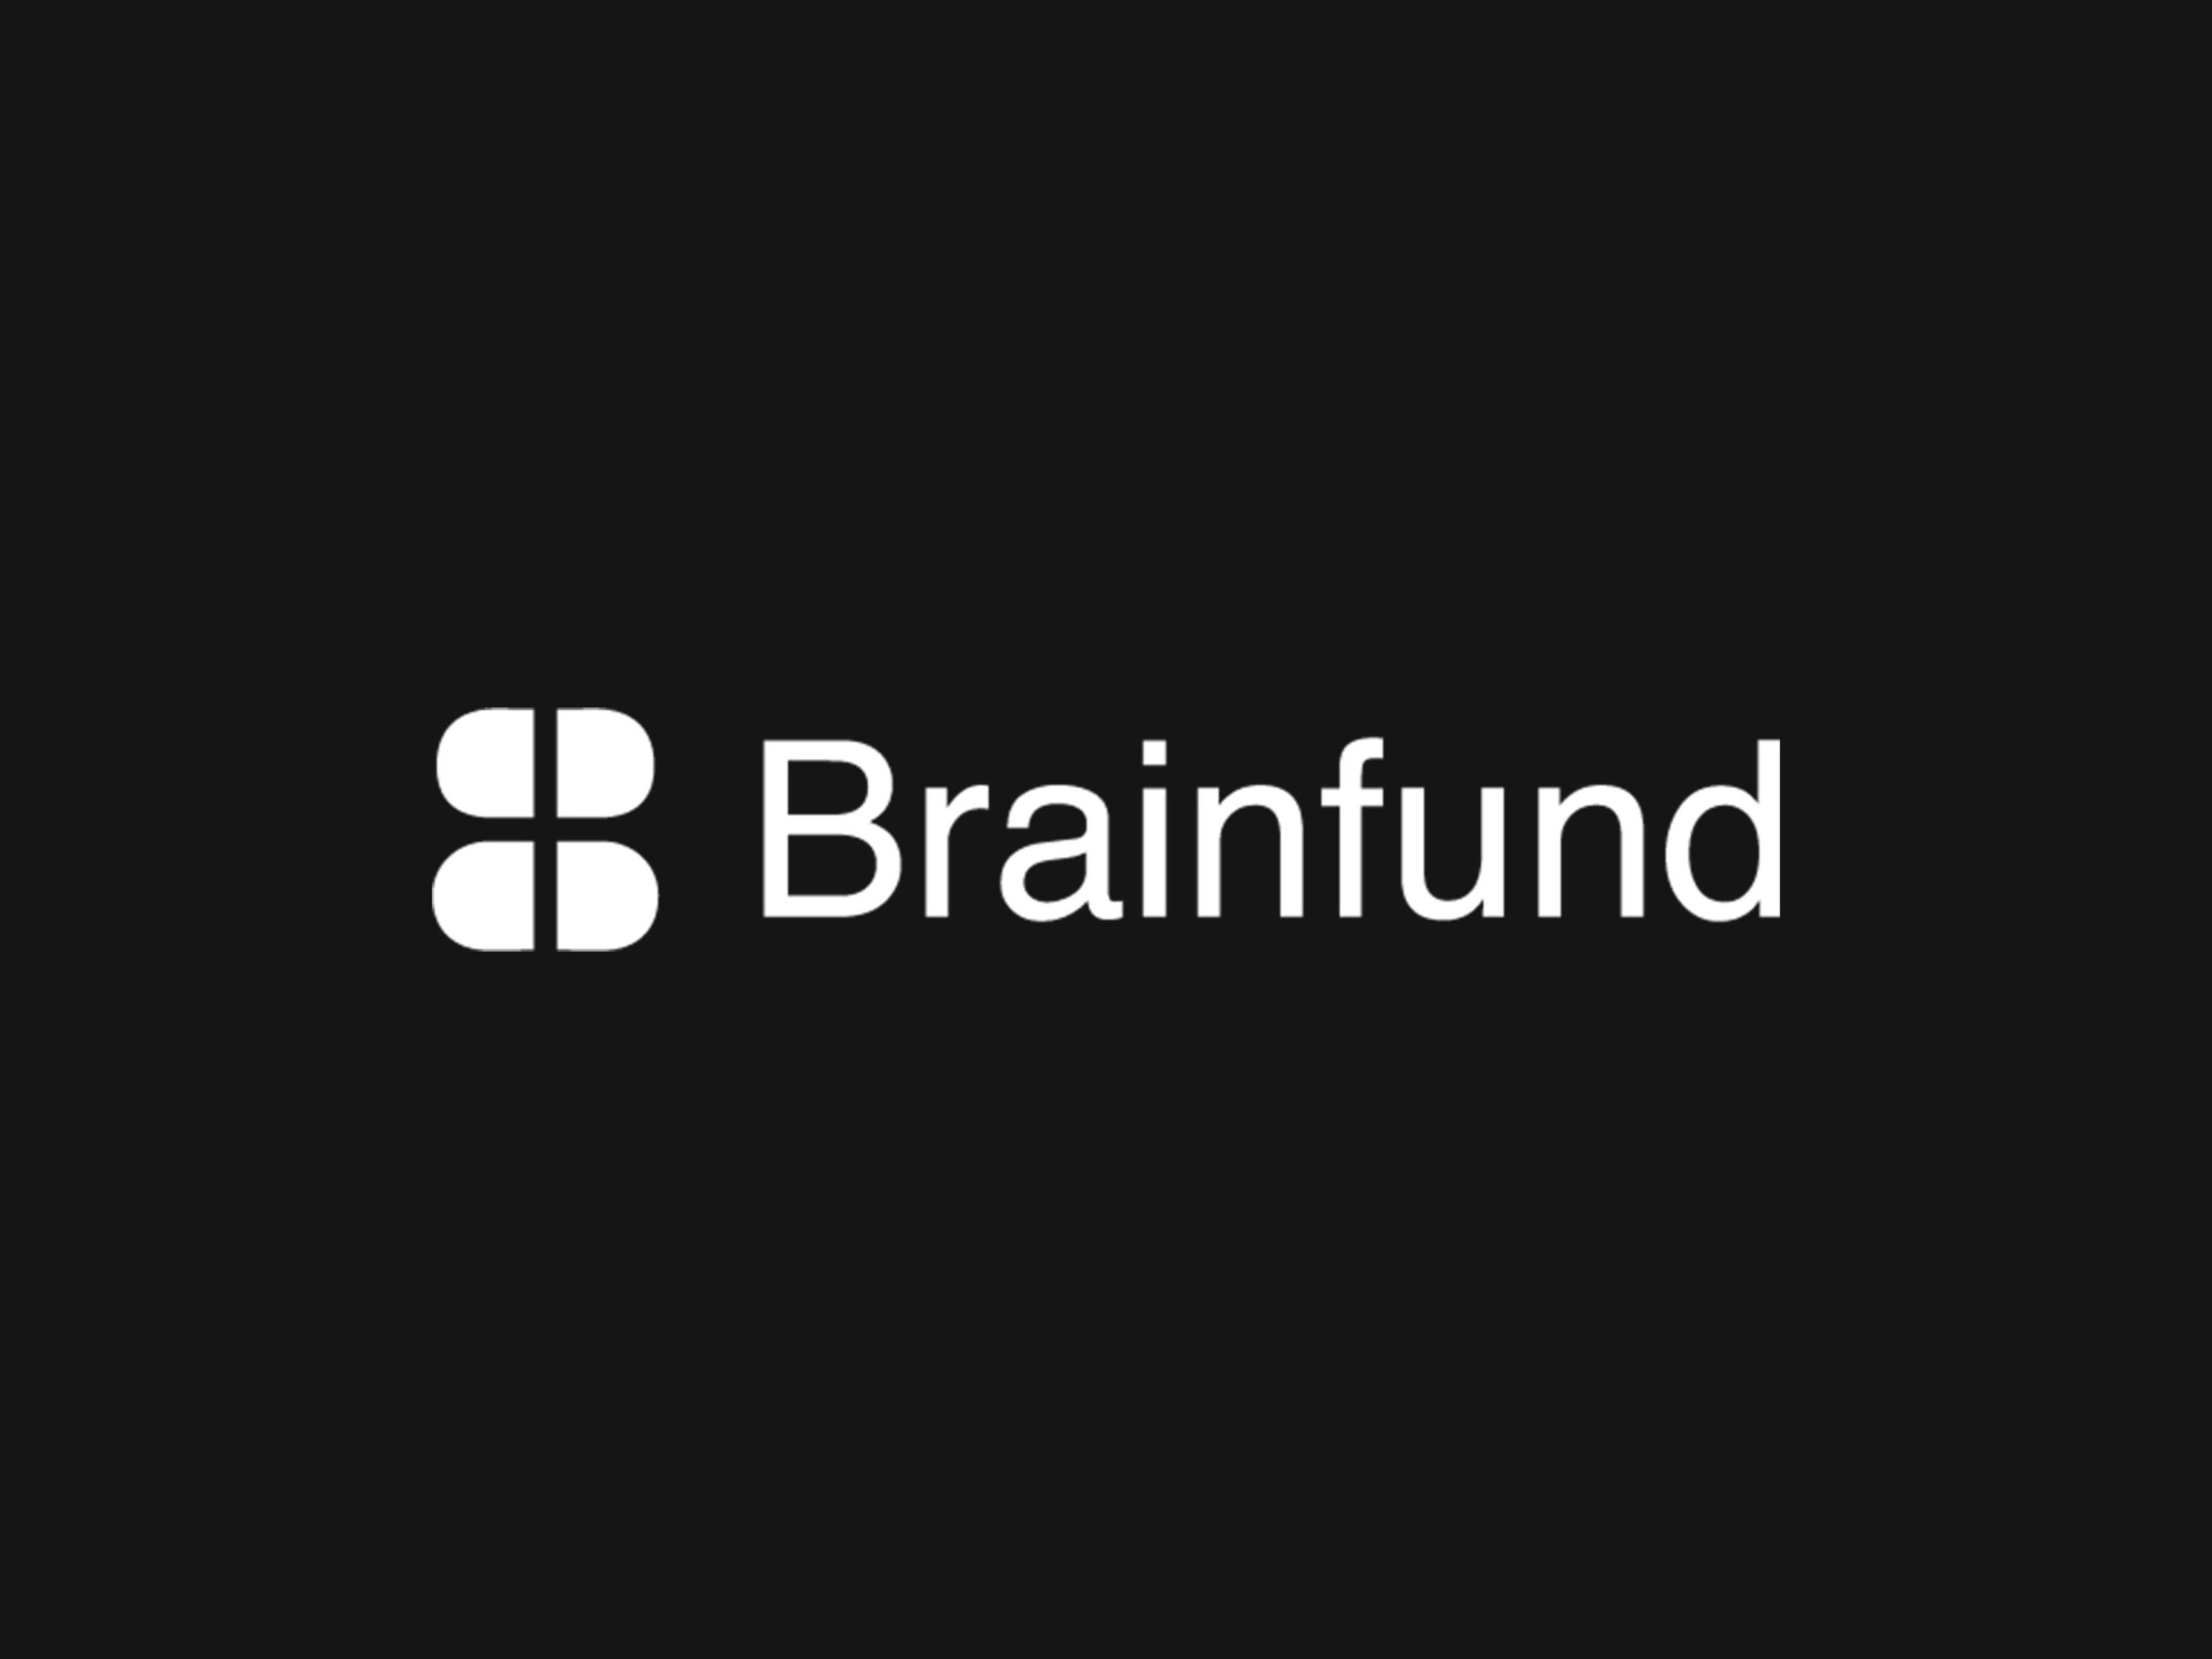 Brainfund